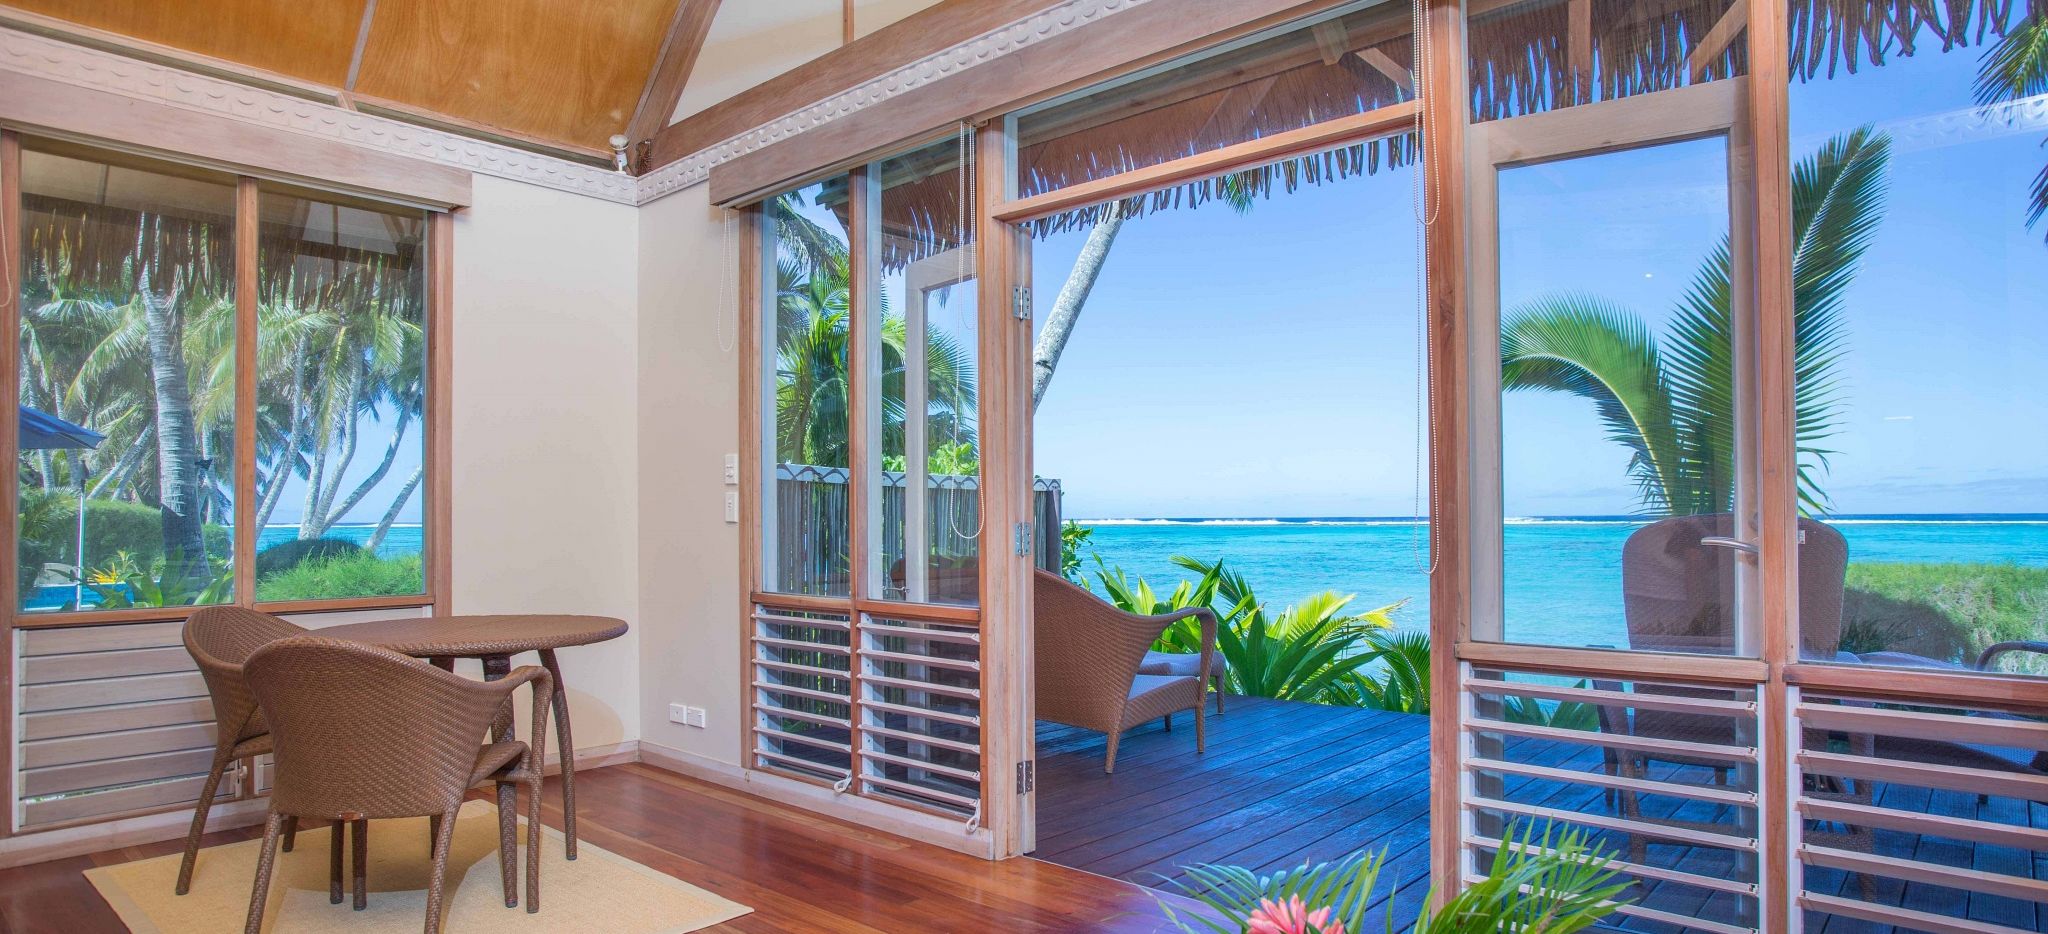 Aussicht auf das Meer vom Bungalow des Little Polynesian Hotels